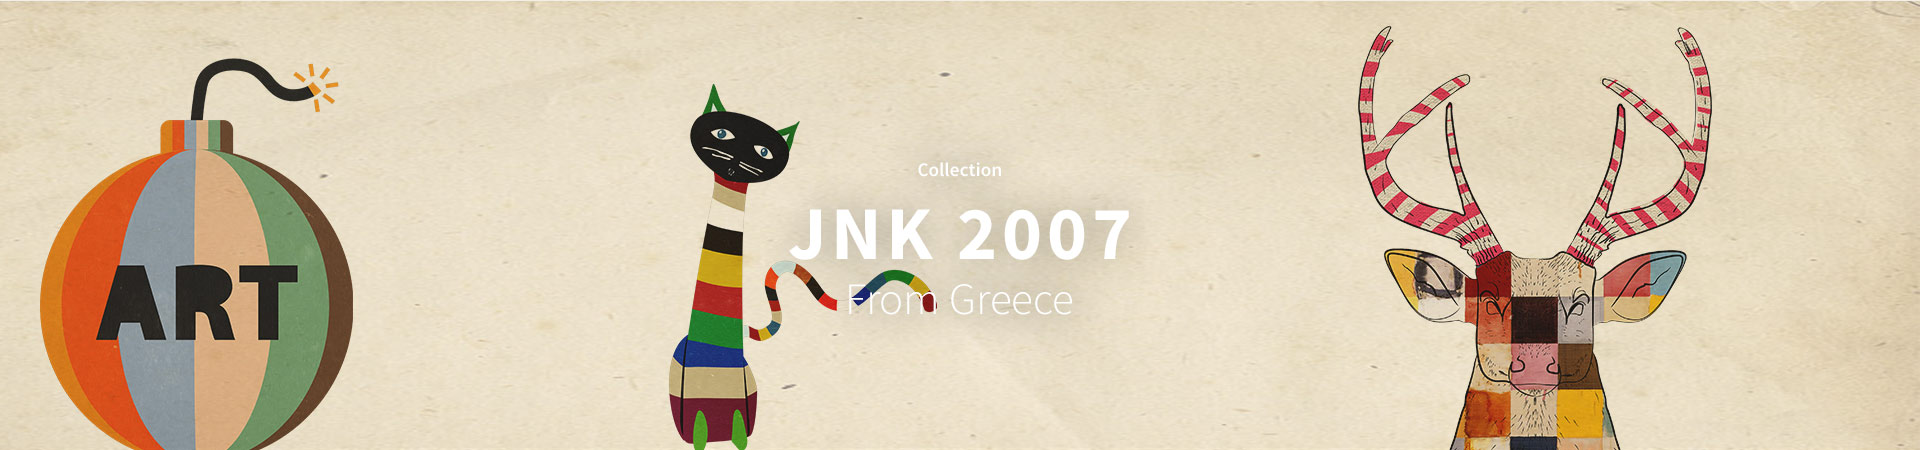 JNK2007